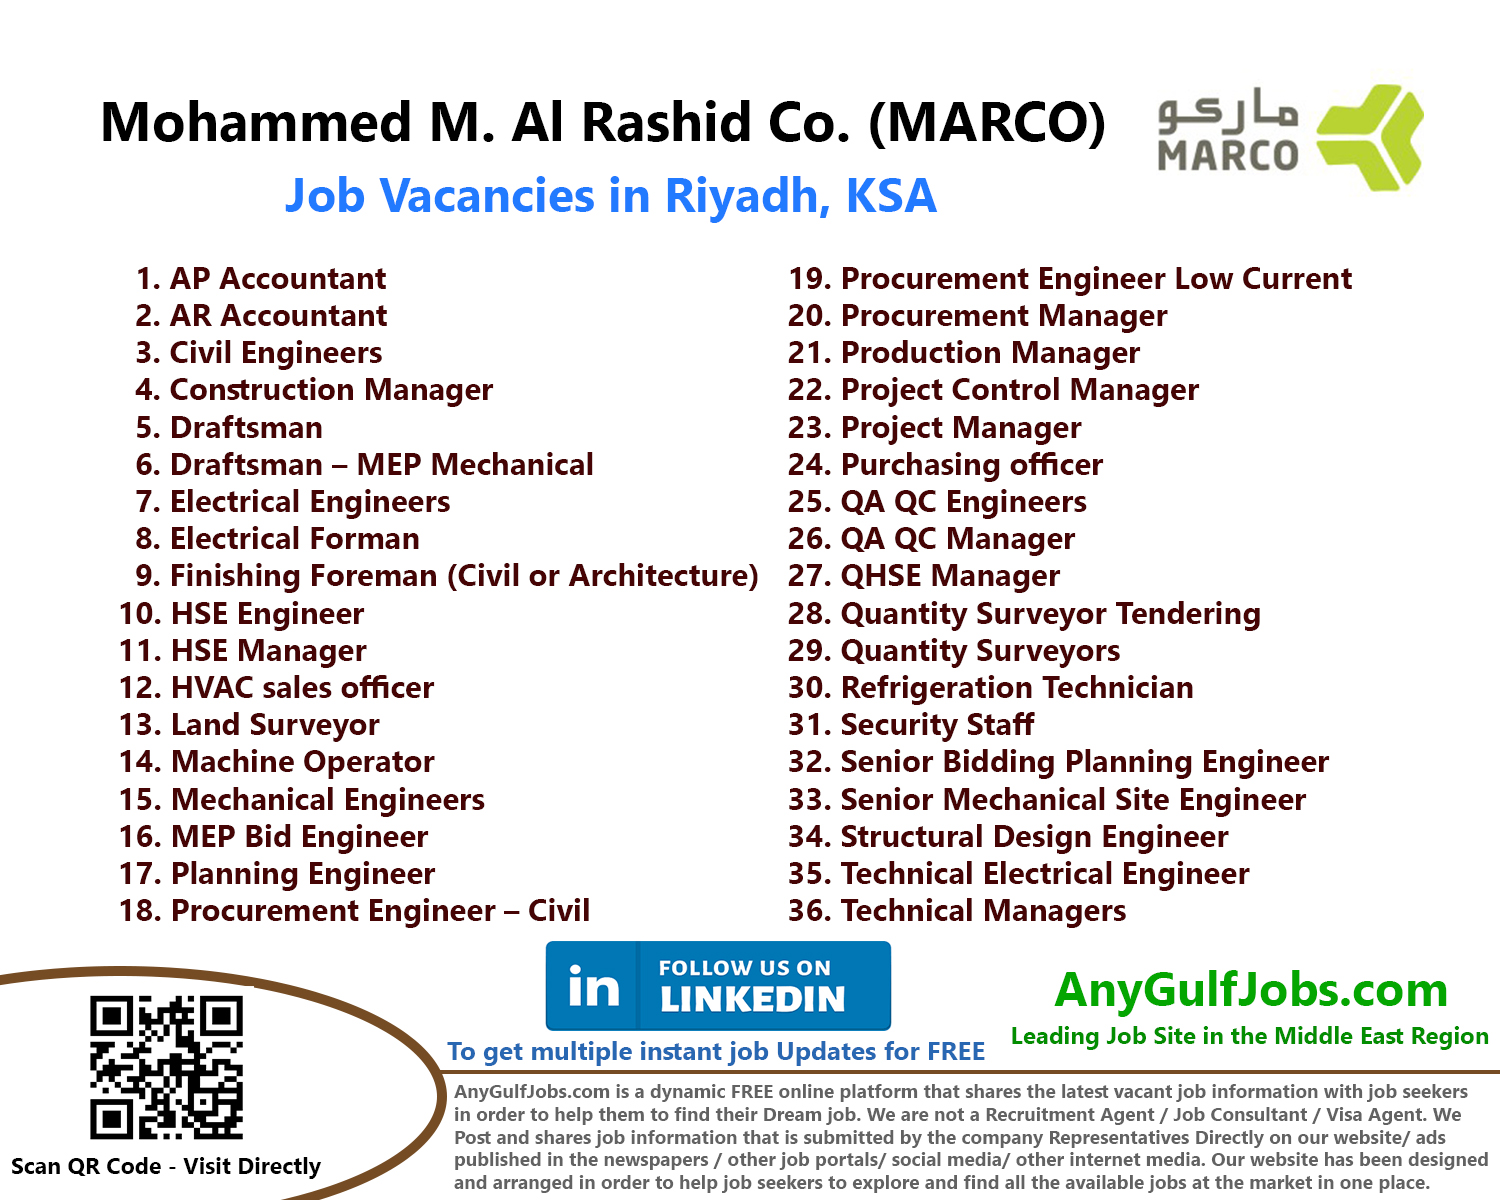 Mohammed M. Al Rashid Co. (MARCO) Job Vacancies - Riyadh, Saudi Arabia - KSA